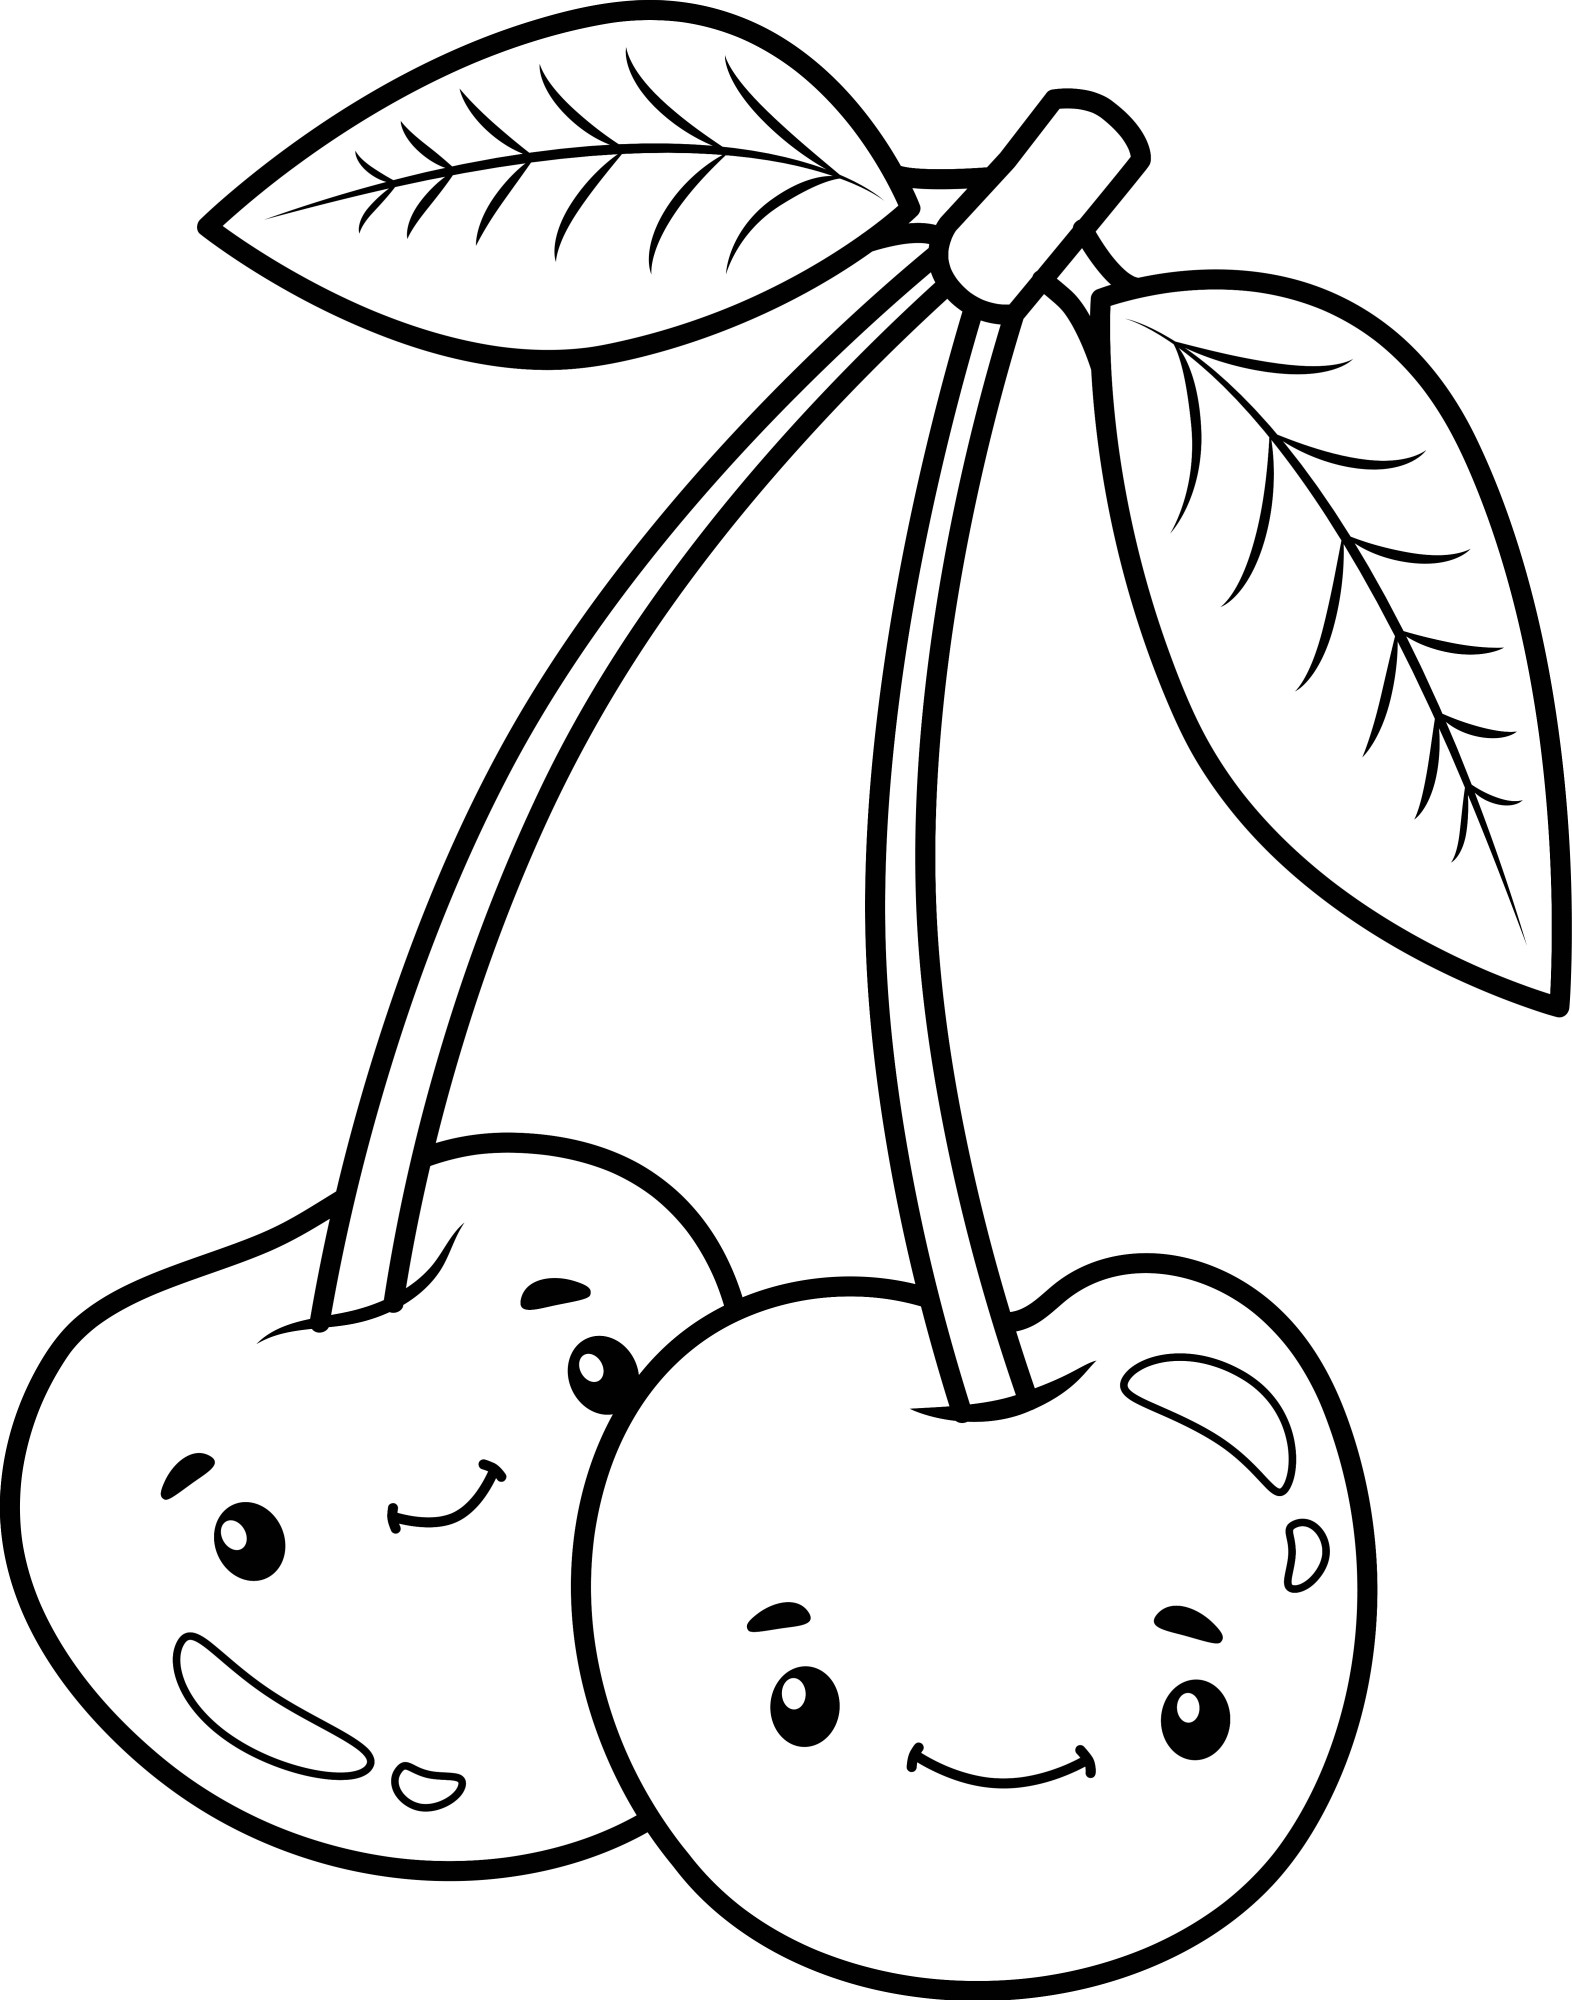 Раскраска для детей: милые мультяшные ягоды вишни на веточке